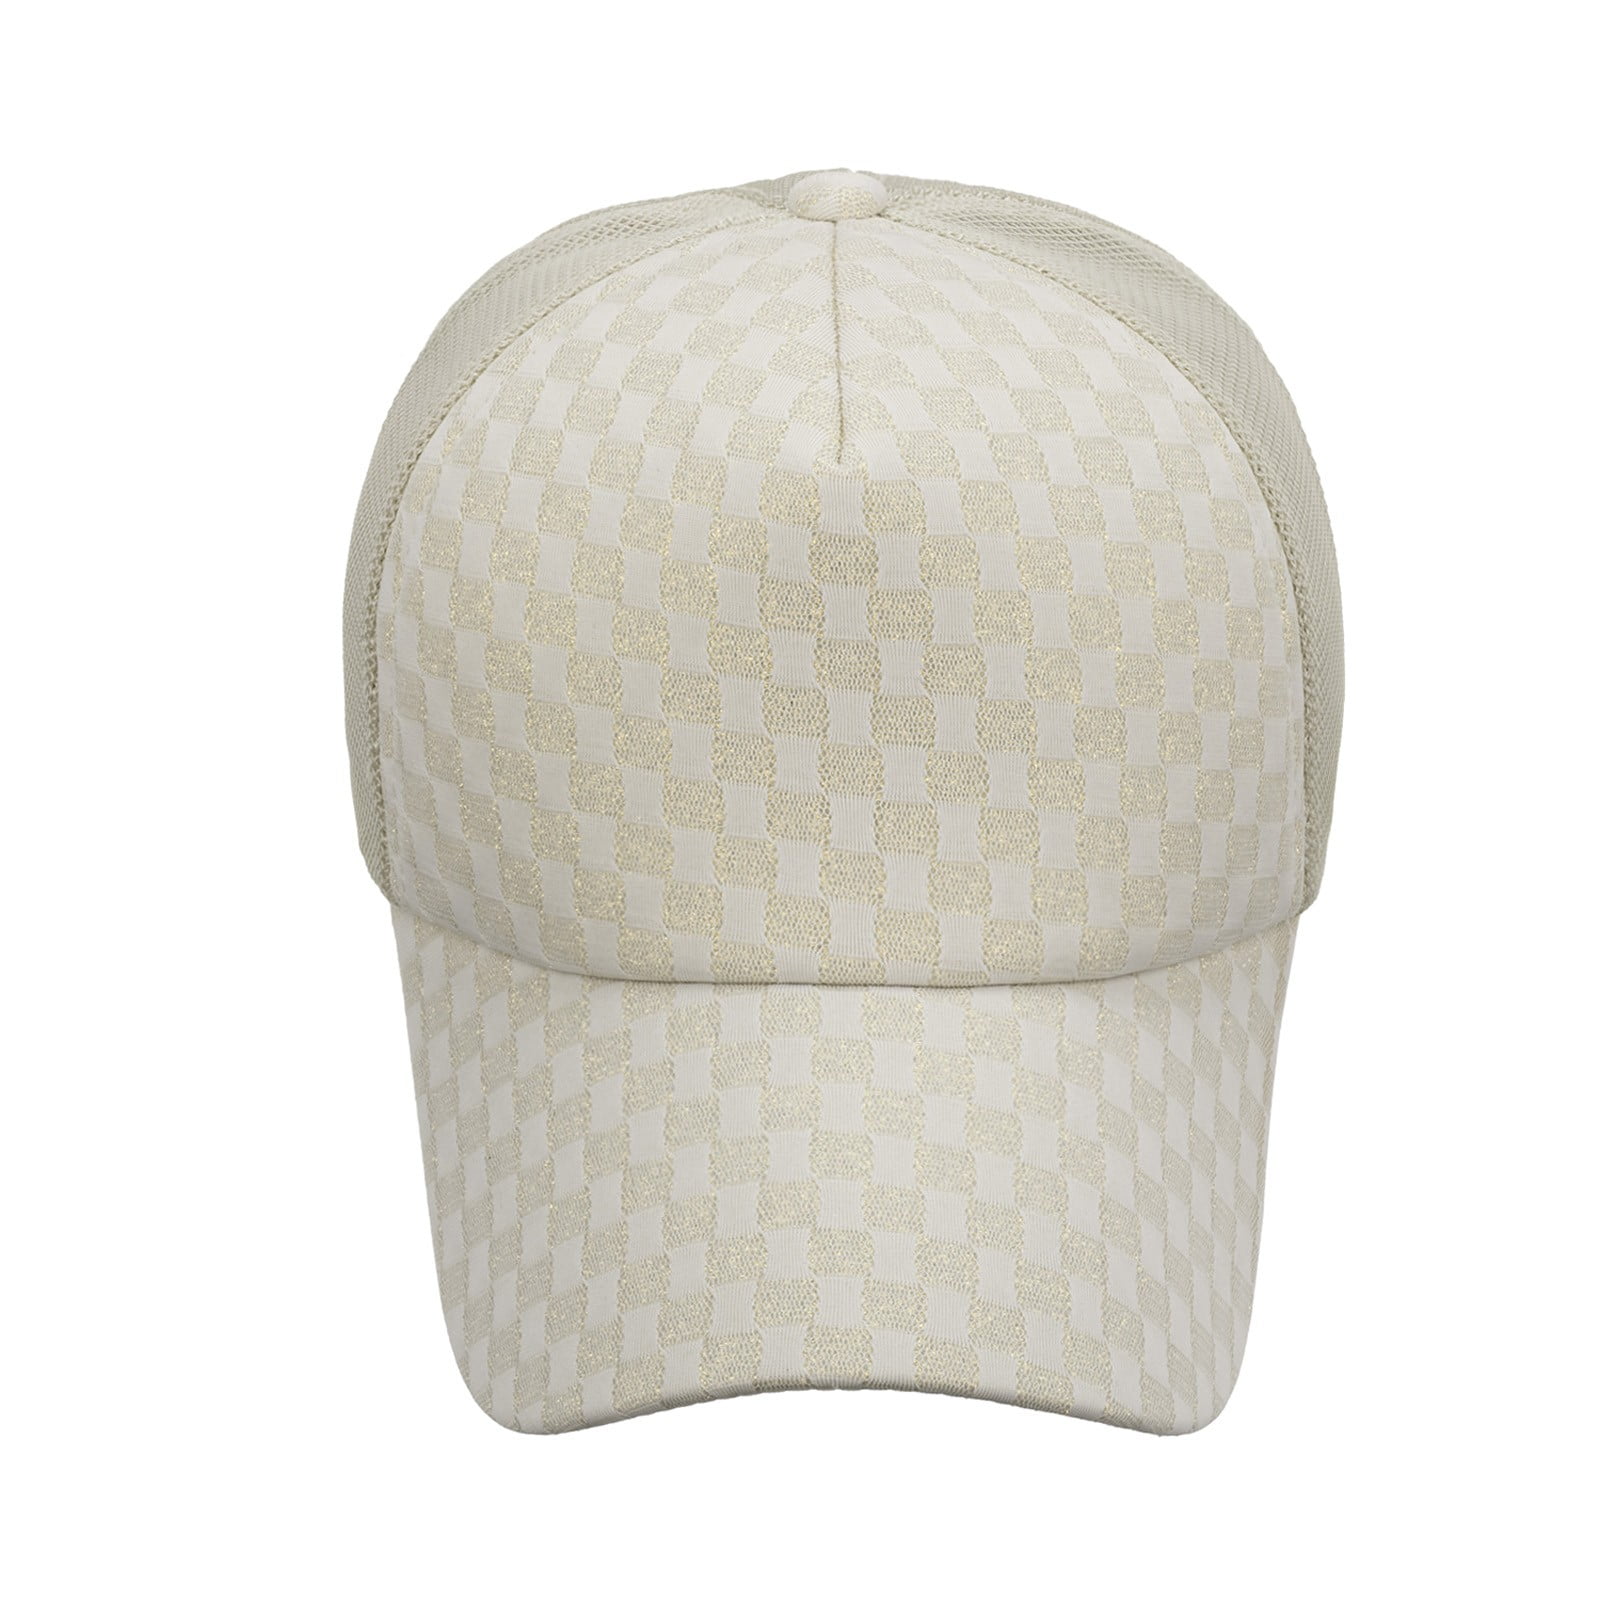 JDEFEG Hats for Men Women Hat Spray Sweat Hat Hop Cap